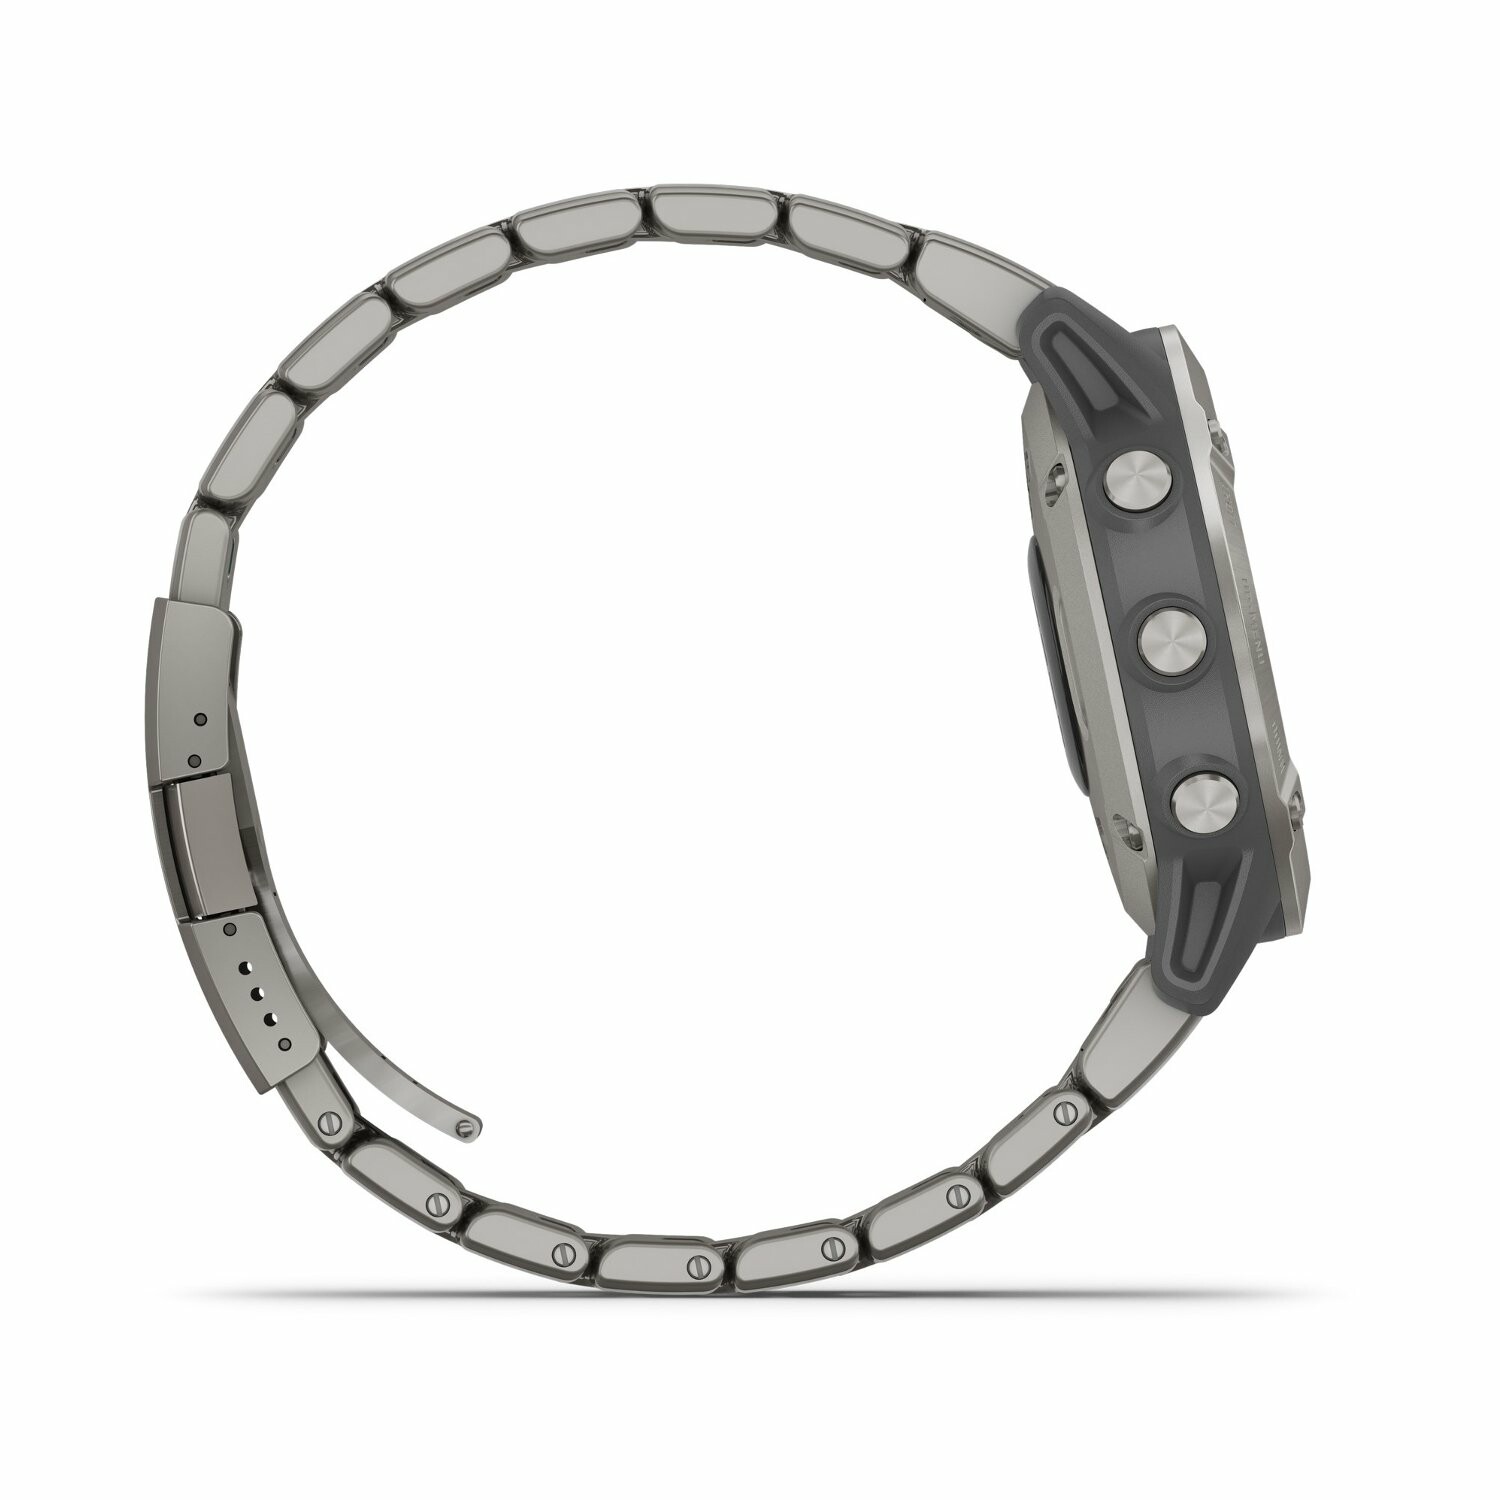 Achat Montre connectée Garmin fenix 6 avec bracelet noir